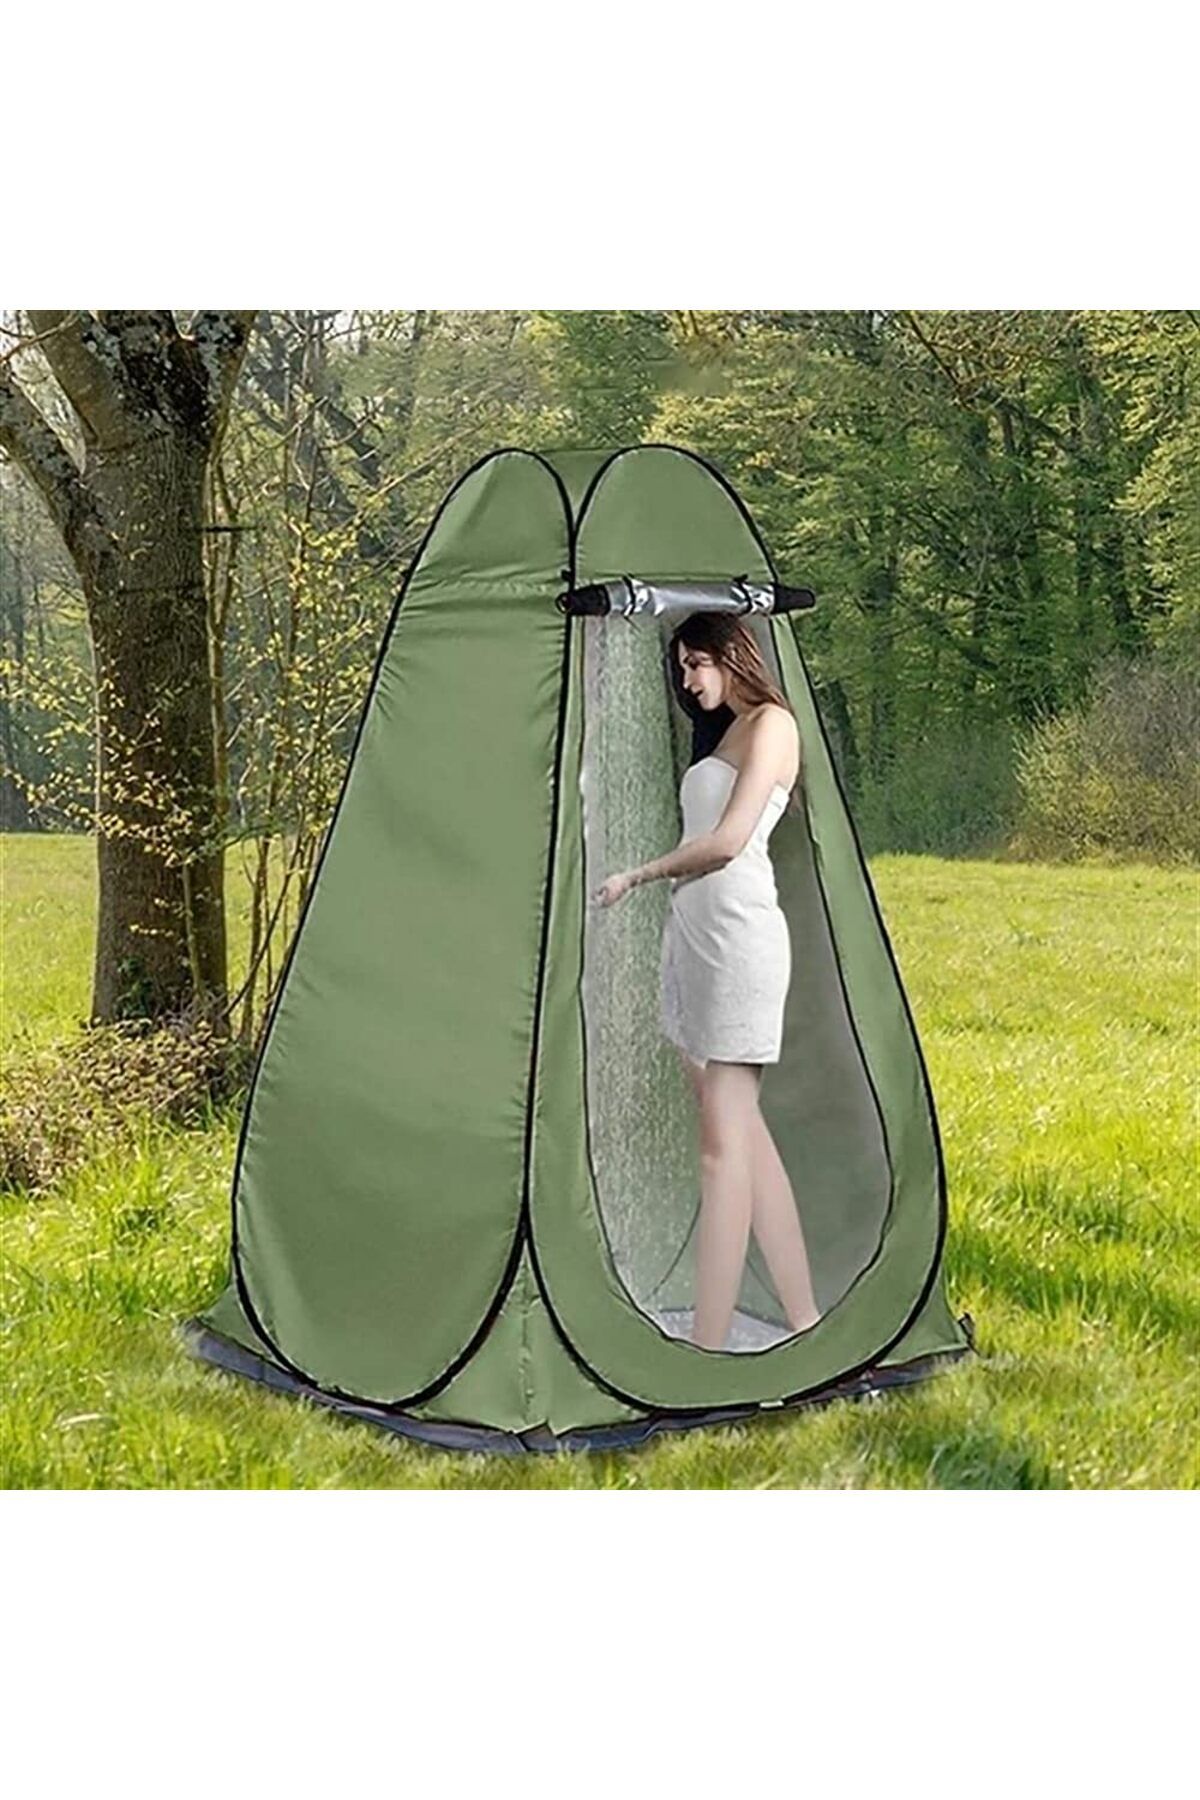 Genel Markalar Kamp Alanı Duş Giyinme Wc Çadırı Fotoğrafcı Prova Kabini 190x120x120